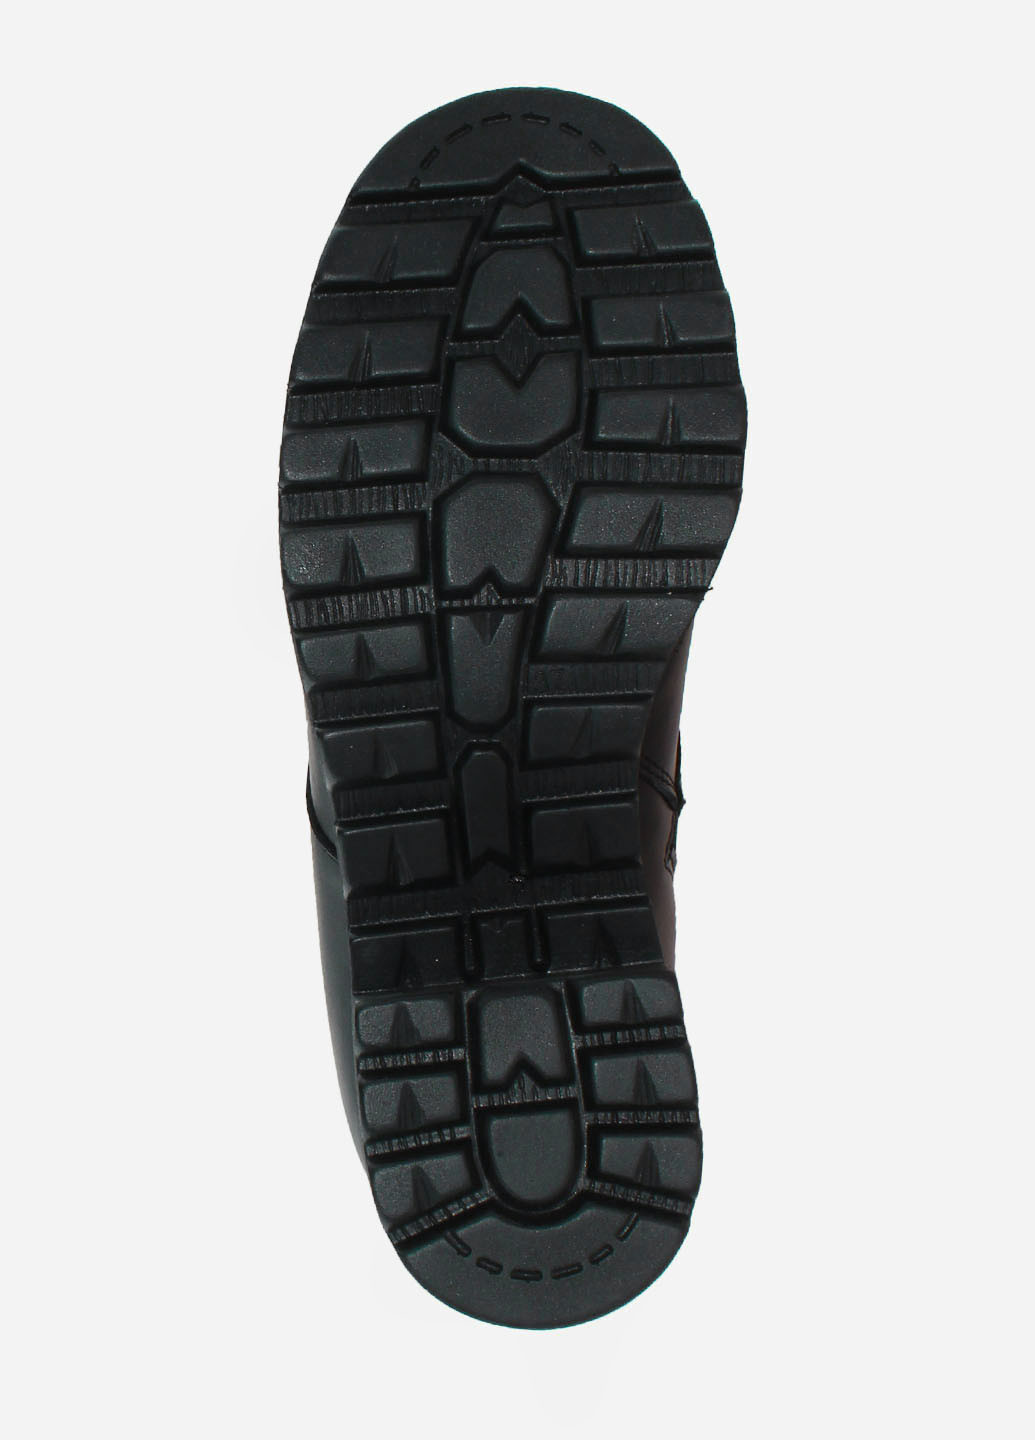 Зимние ботинки ra371-880 черный Alvista